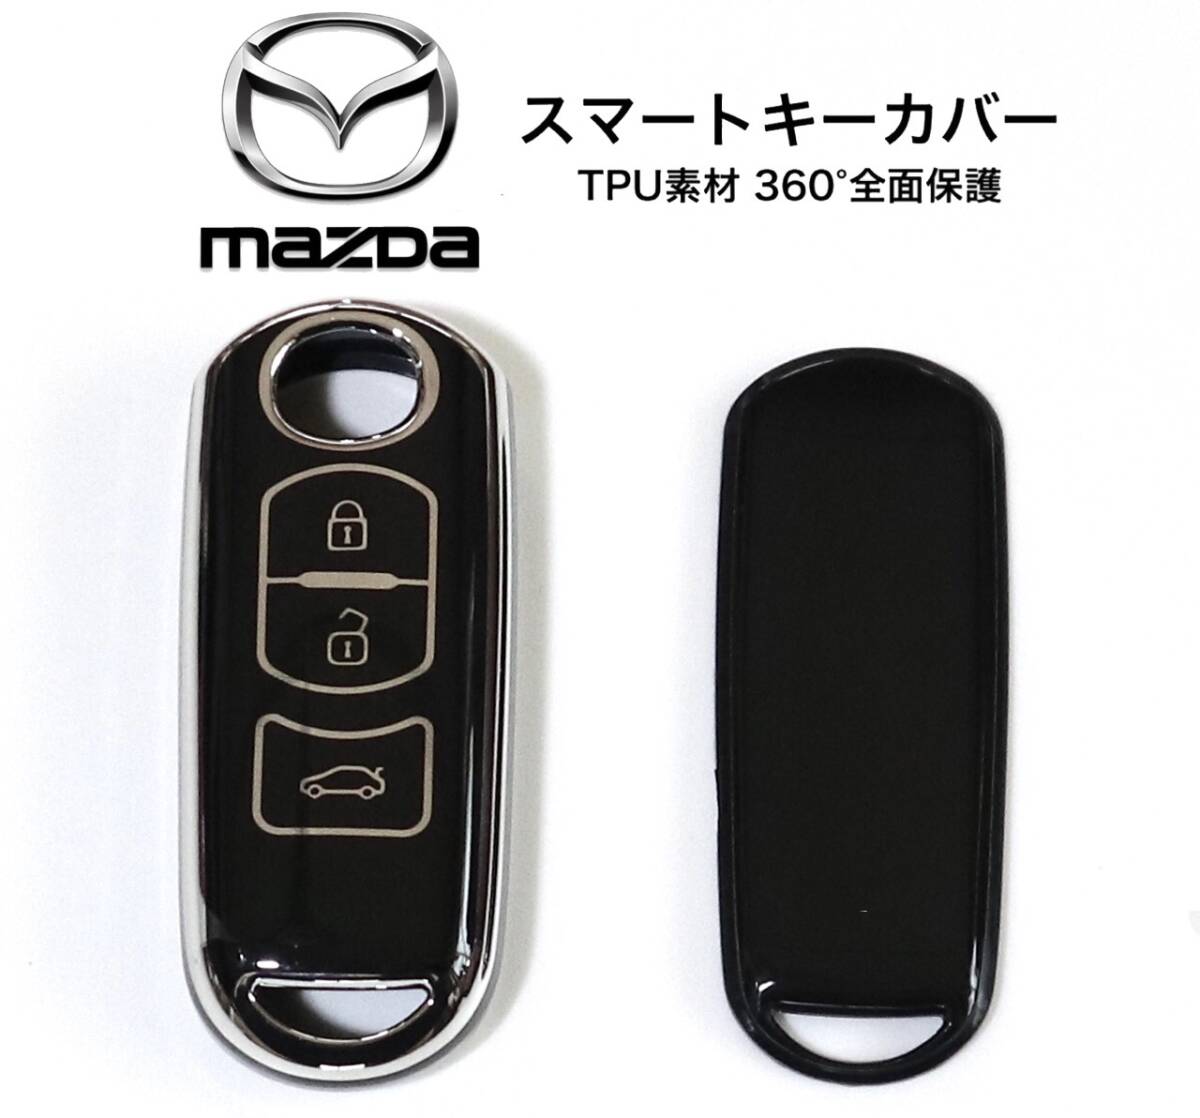 マツダ スマートキーカバー ブラック×シルバー TPU 360°全面保護 スマートキーケース CX3 CX5 CX8 MPV デミオ アテンザ アクセラ 他の画像1